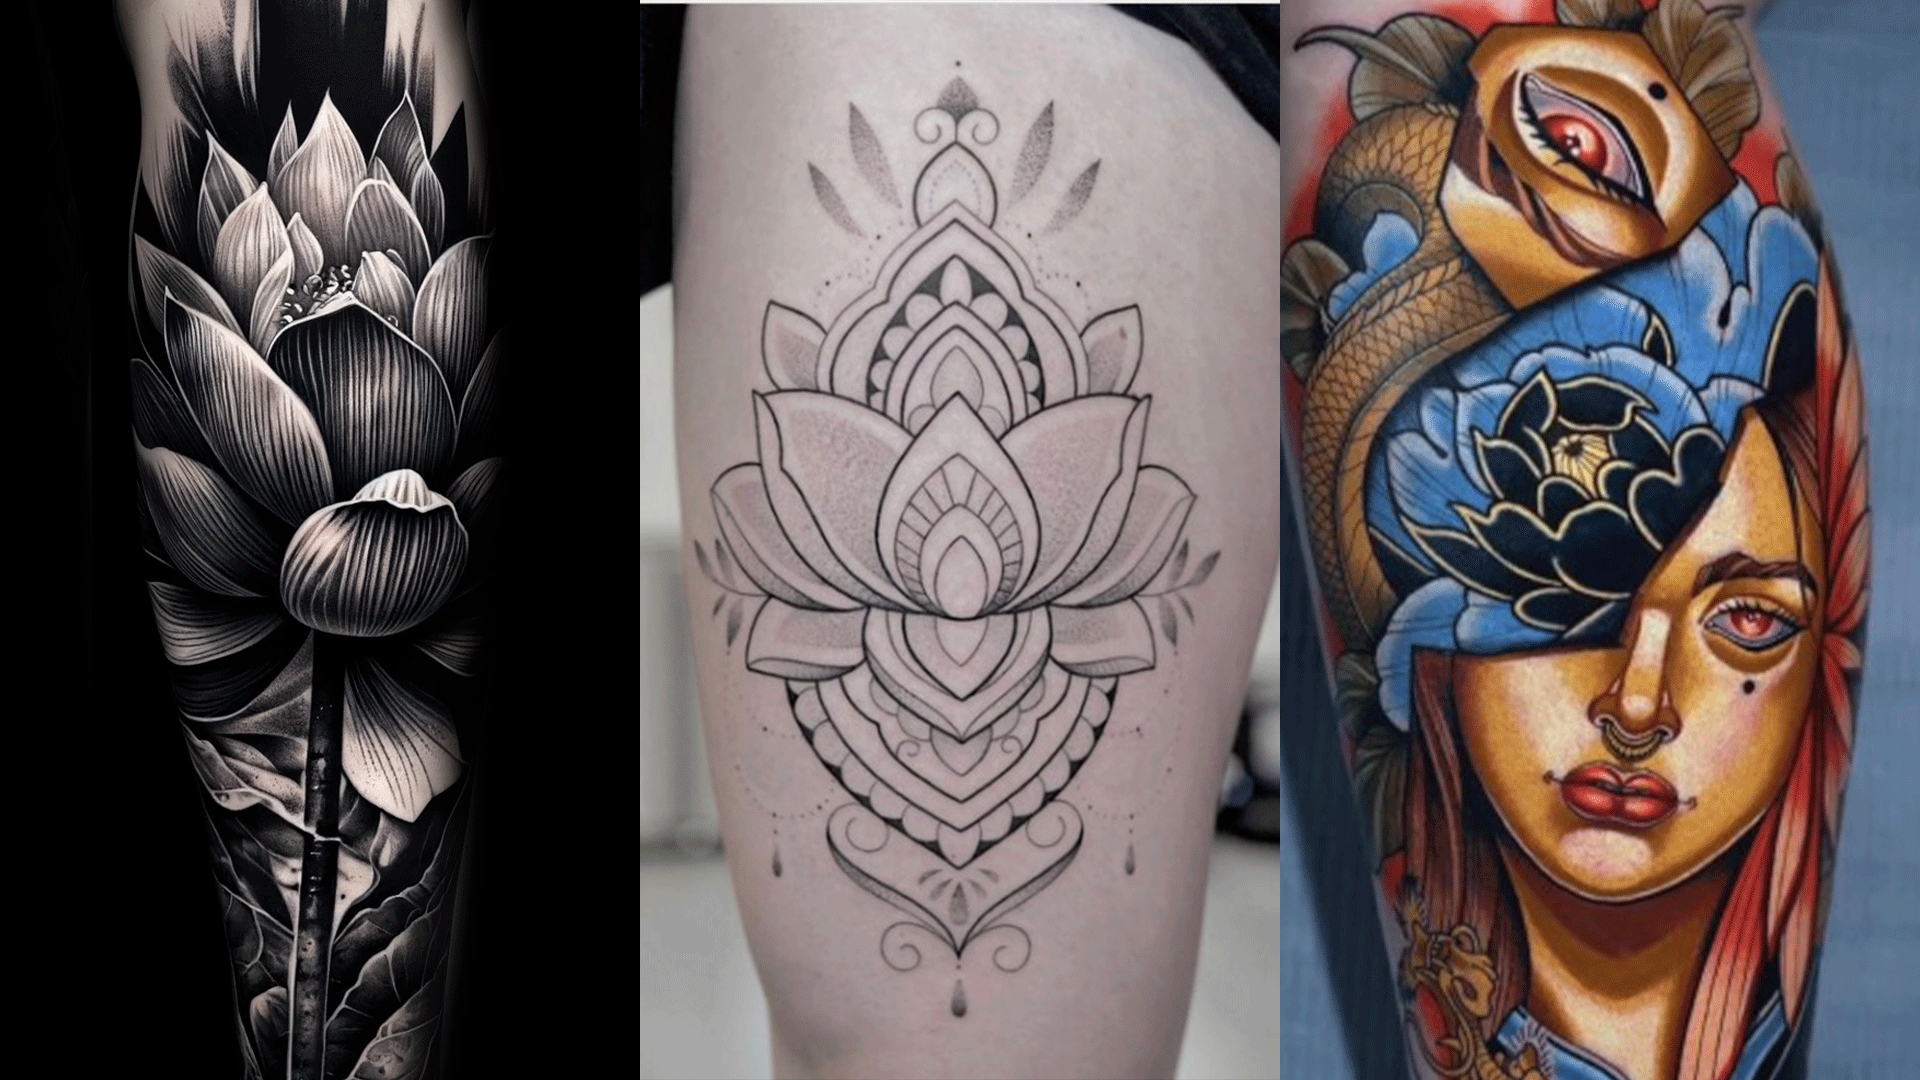 Lotus flower tattoo on the forearm - Tattoogrid.net